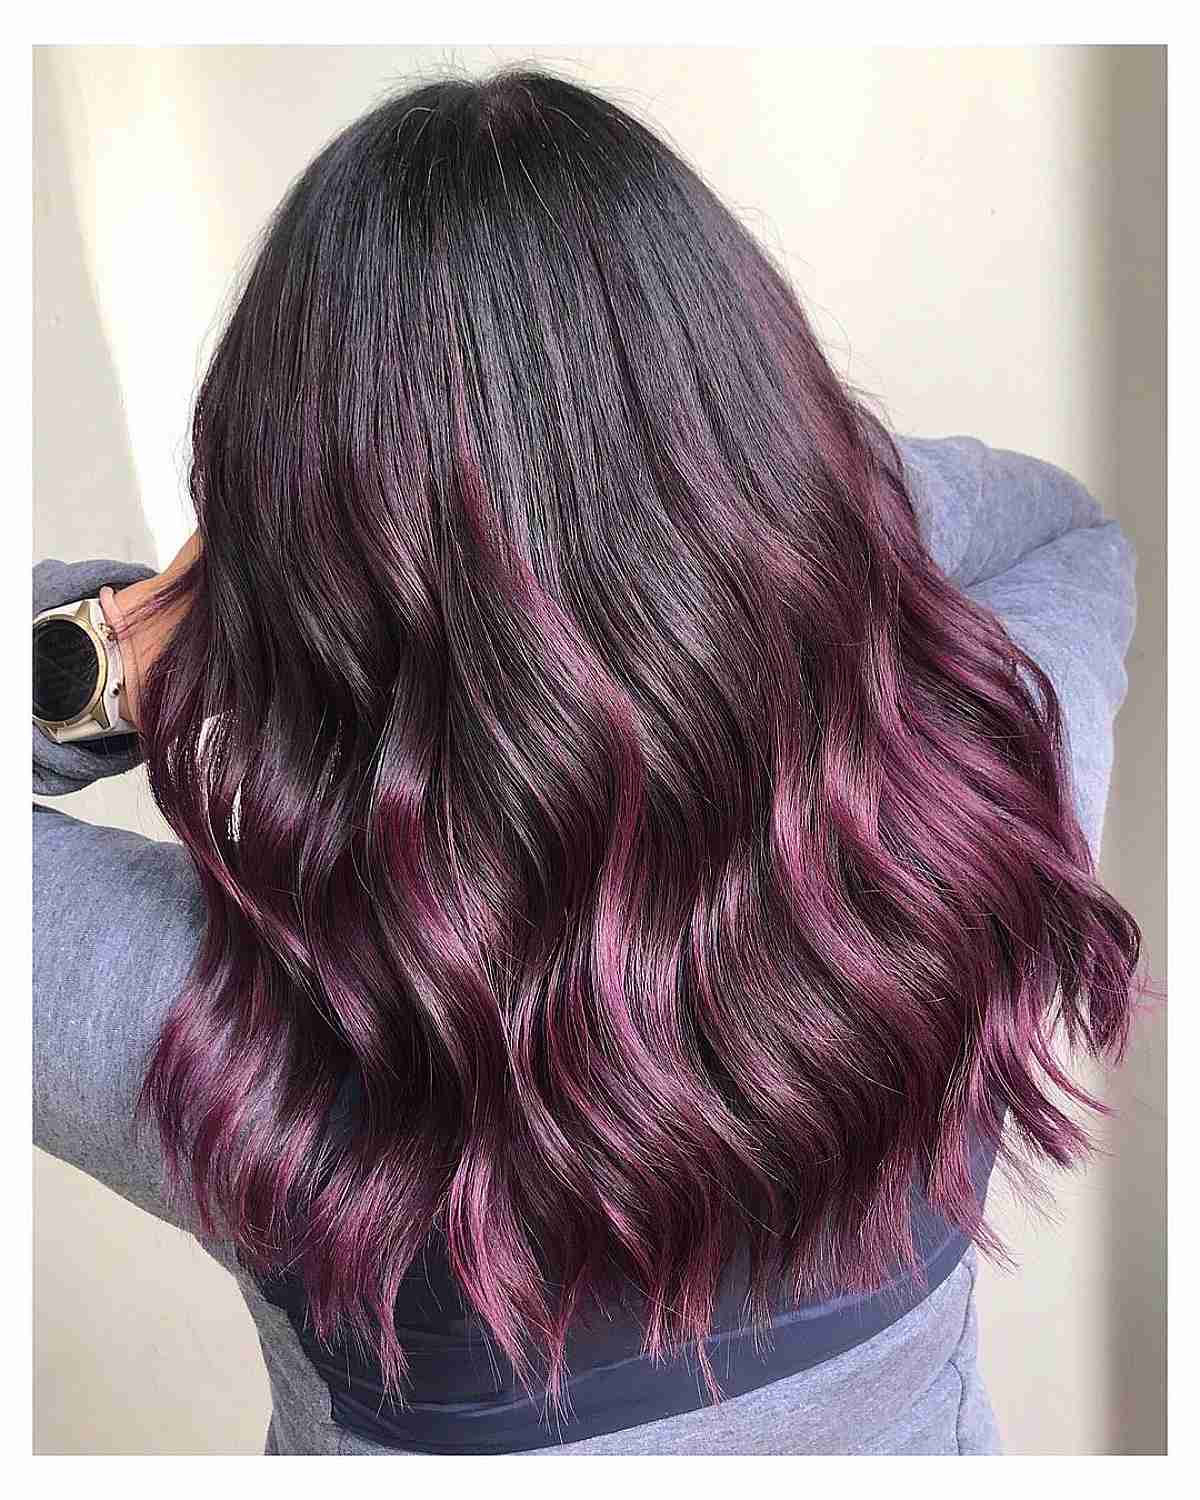 Tronco rosa cremoso com brilho cor de cabelo de inverno